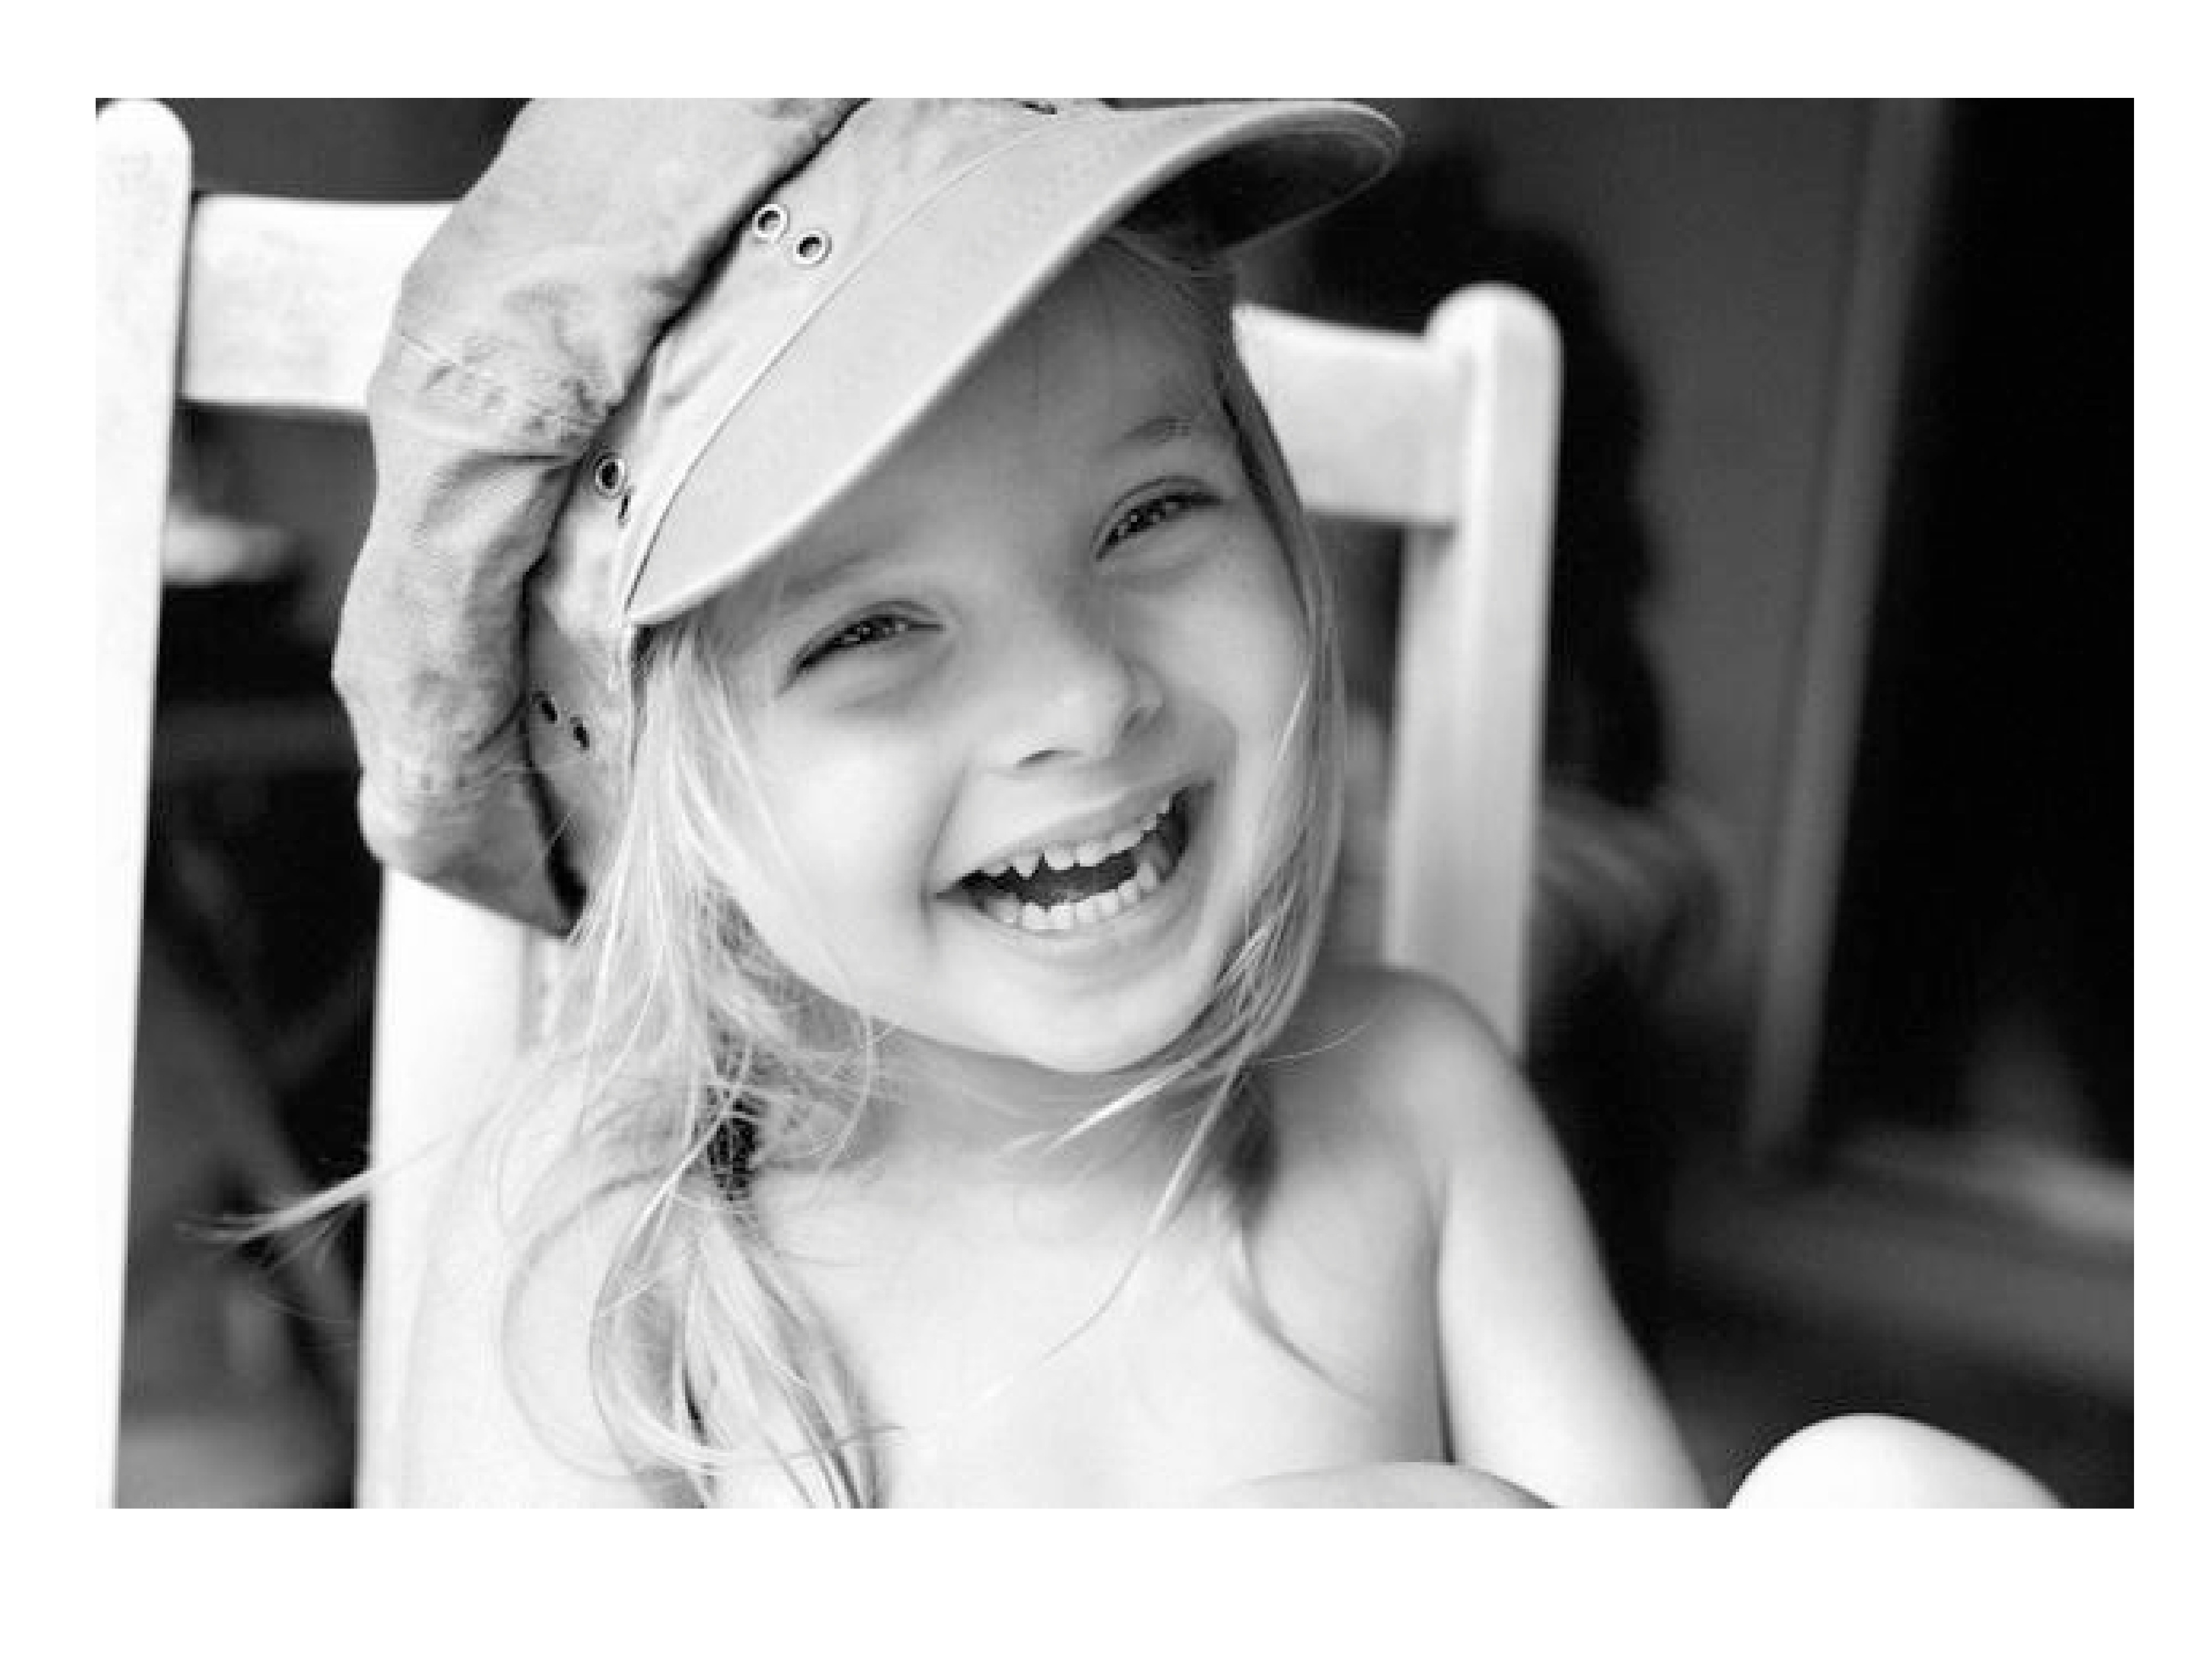 Улыбаться и смеяться чаще. Улыбка ребенка. Маленькая девочка смеется. Улыбка девочки. Красивая улыбка ребенка.